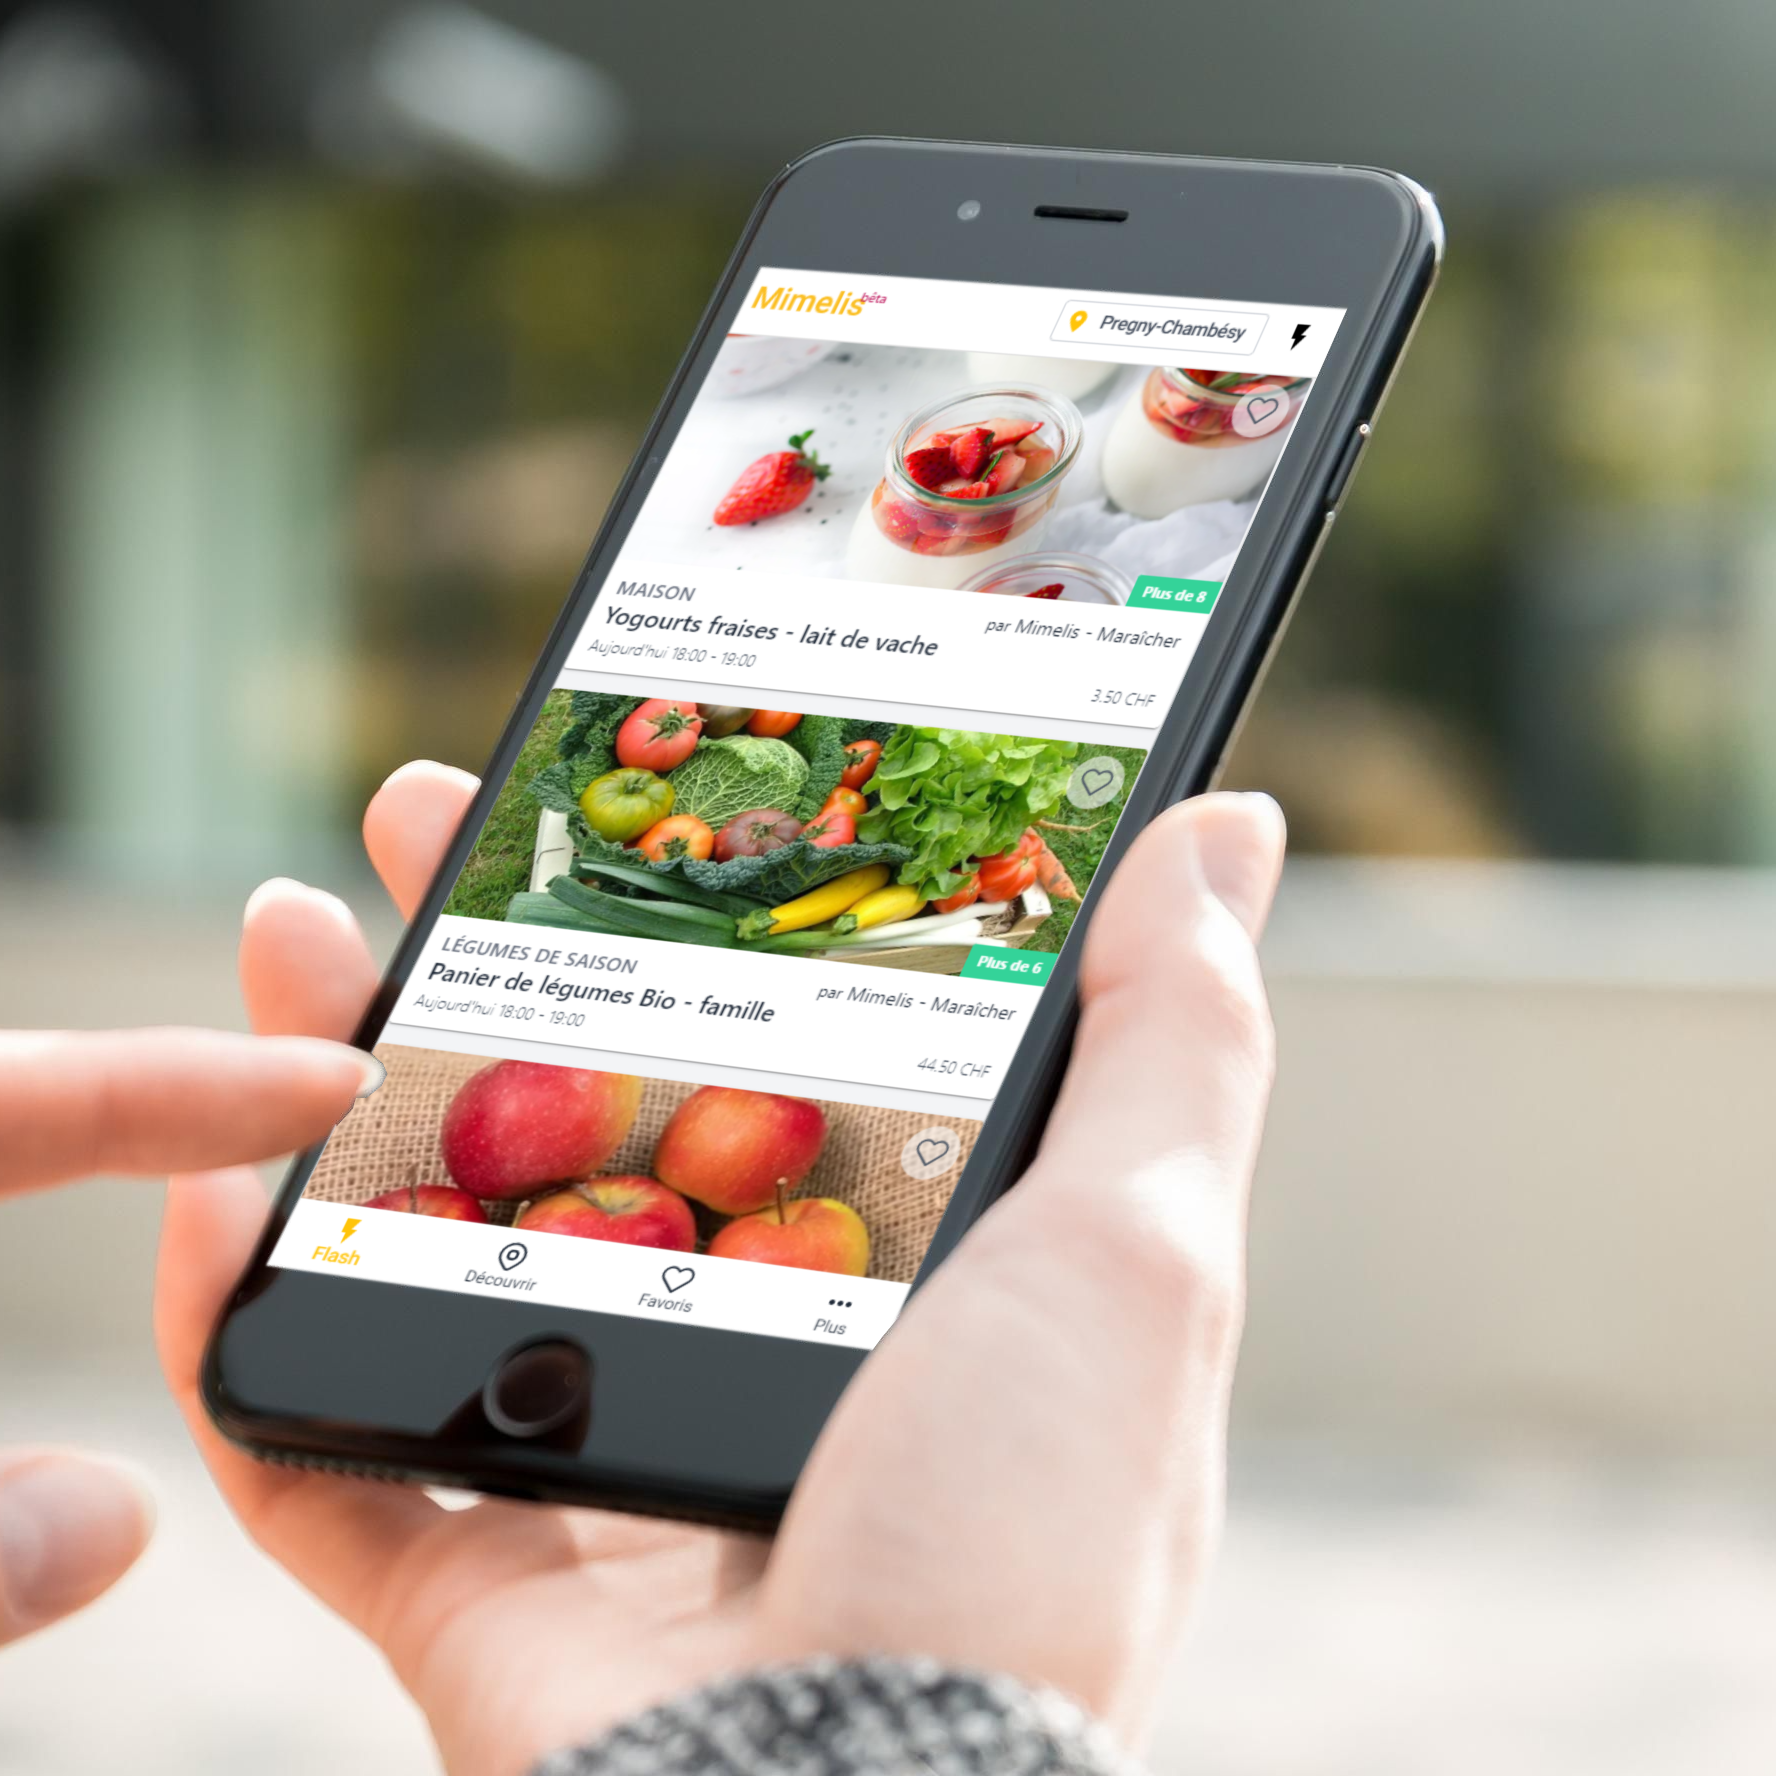 Vos clients voient instantanément vos offres et réservent vos paniers de fruits et légumes en ligne. | Mimelis